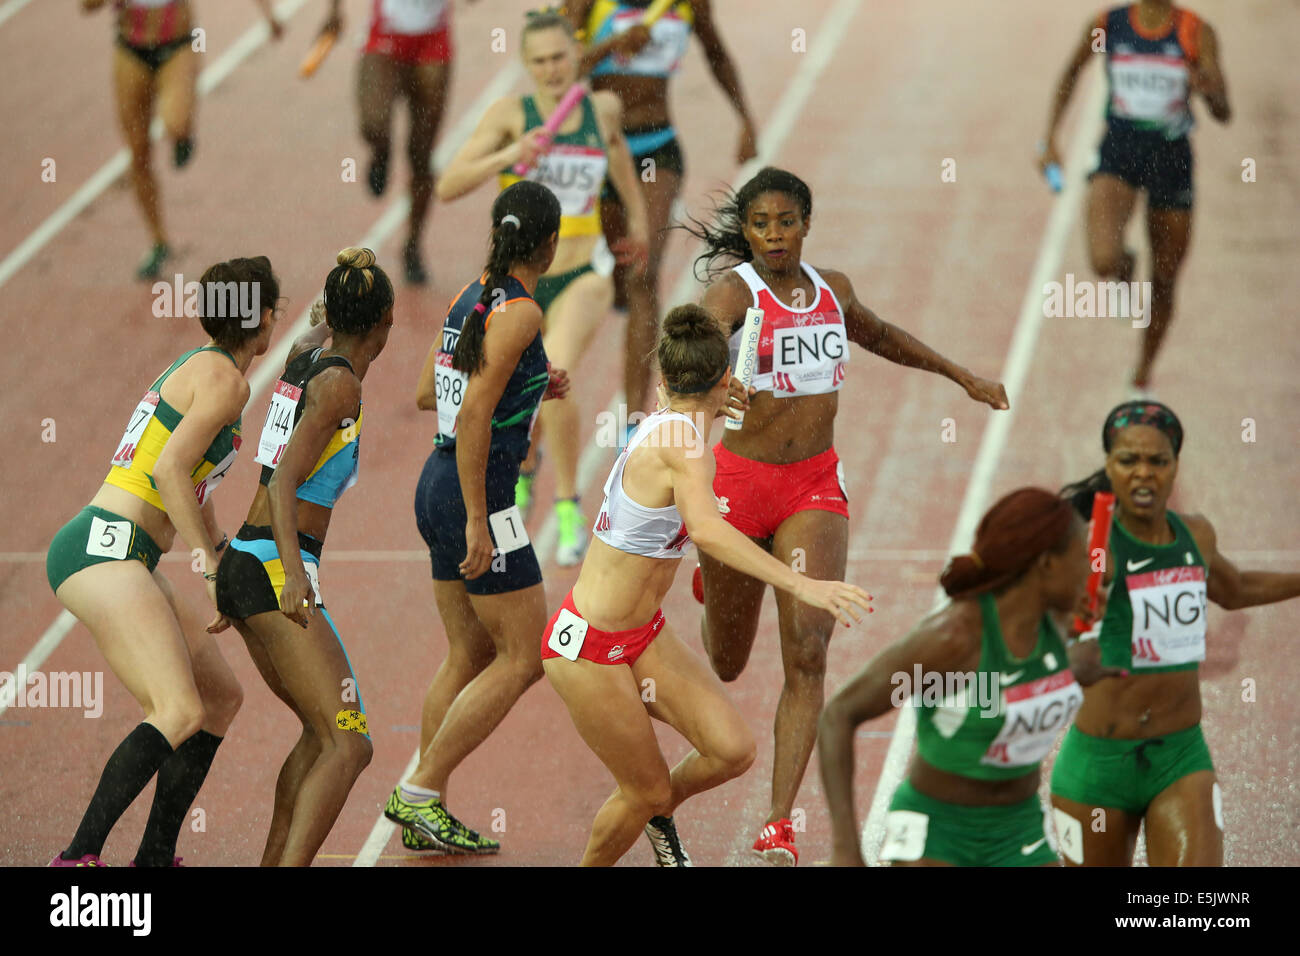 Glasgow Hampden Park 2 août 2014. Journée des Jeux du Commonwealth 10 Athlétisme. Les femmes du 4x400m relais final. 1er - 2e - la Jamaïque ; Nigeria ; 3e - France Crédit : ALAN OLIVER/Alamy Live News Banque D'Images